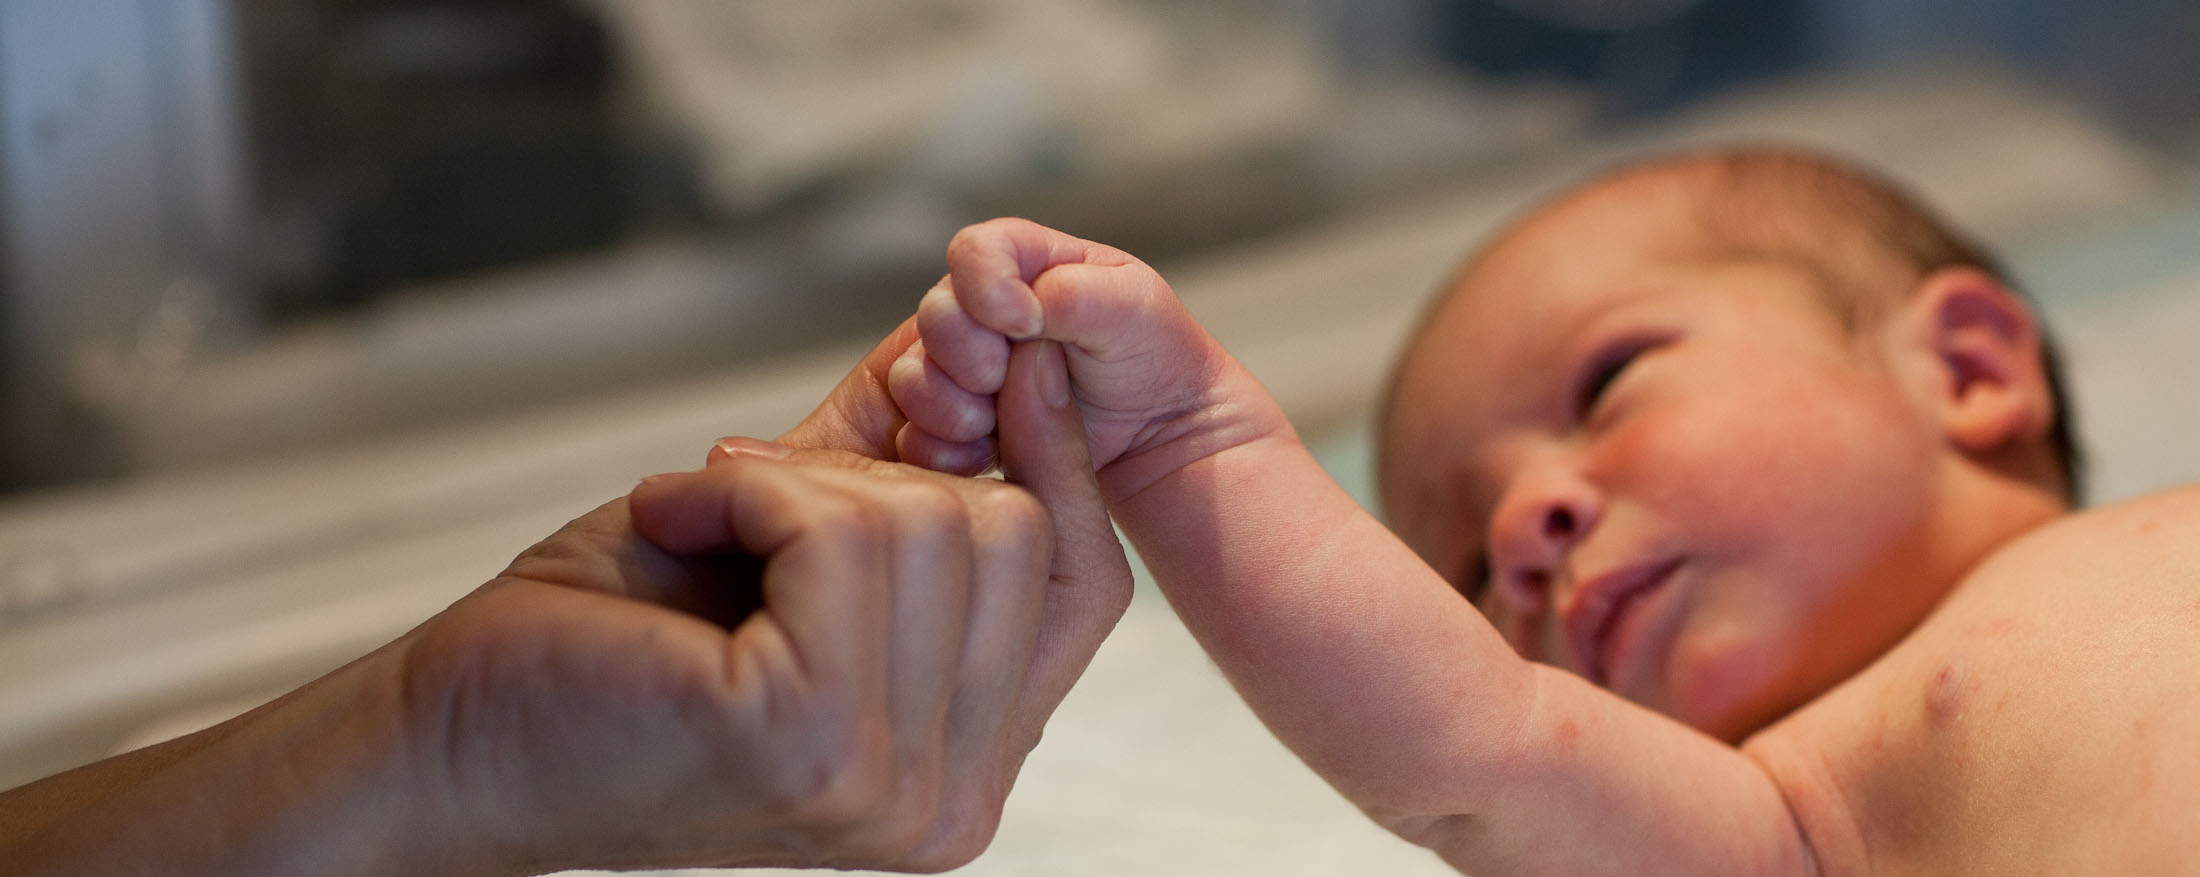 新生児の手を優しく握る大人